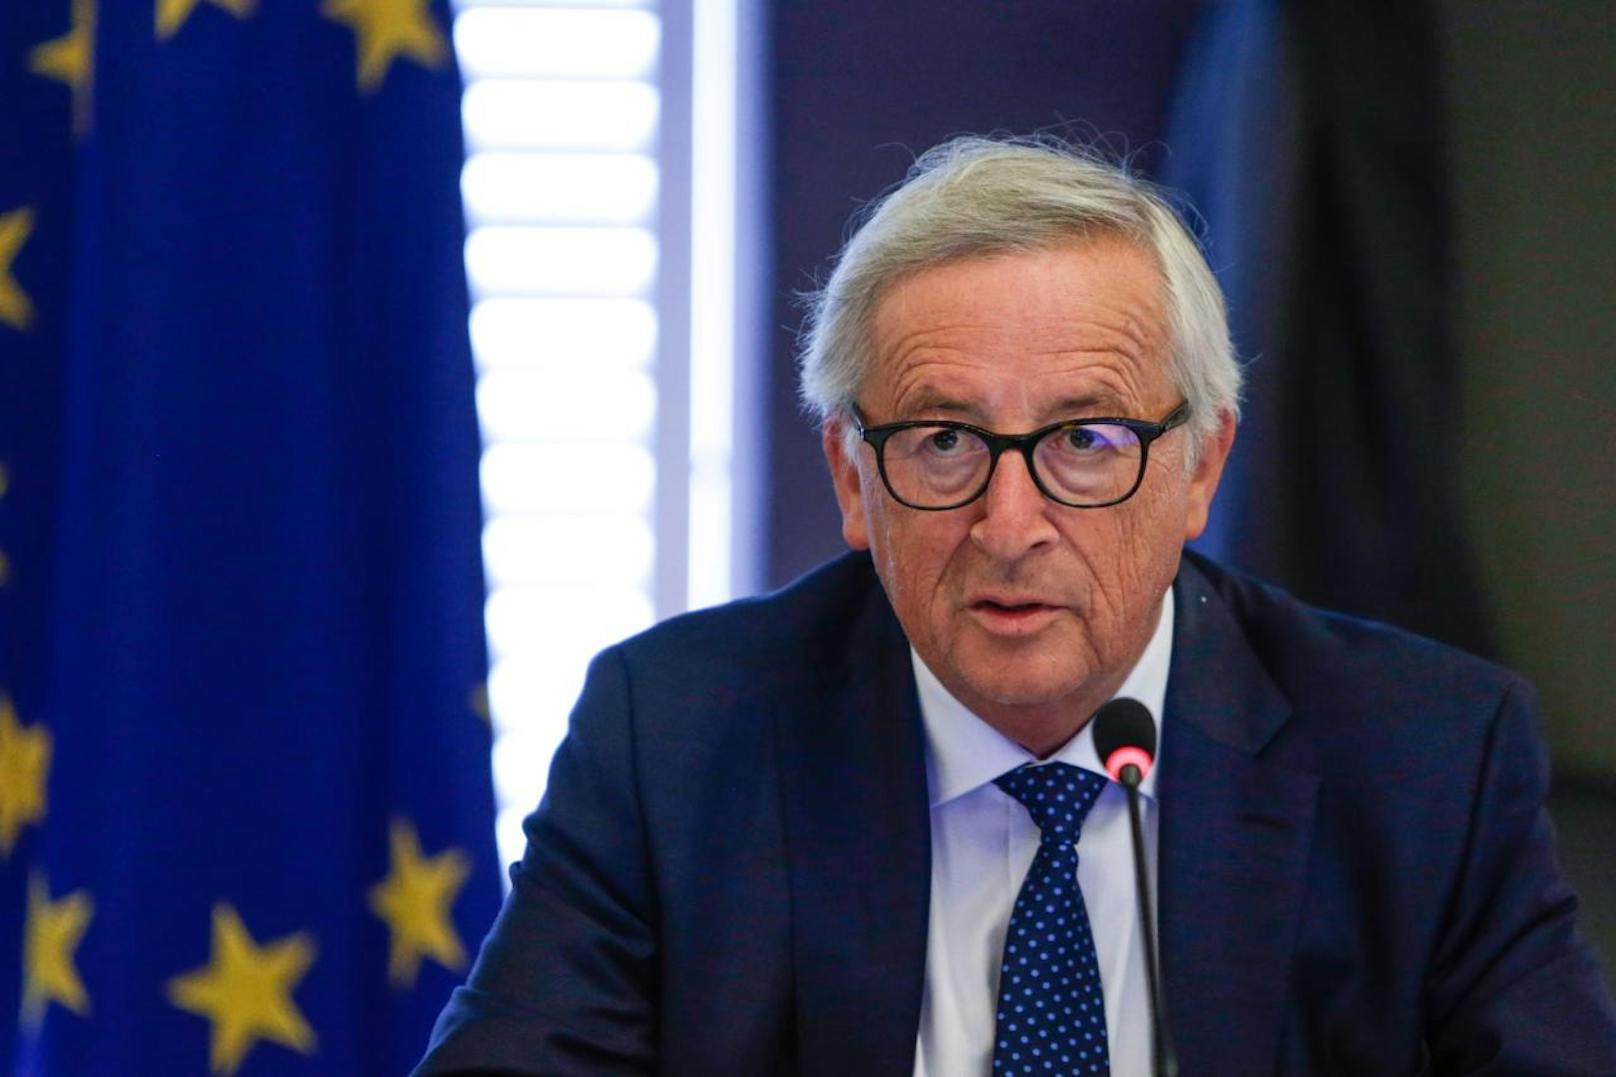 Erzürnt ist hingegen EU-Kommissionspräsident Jean-Claude Juncker: <b>"Es ist ein Unding, dass die Europäische Union in dieser Zukunftssubstanz-Frage nicht mit einer Stimme sprechen kann. Wir werden uns mit den österreichischen Freunden darüber in den nächsten Wochen unterhalten"</b>, sagte er im ORF.